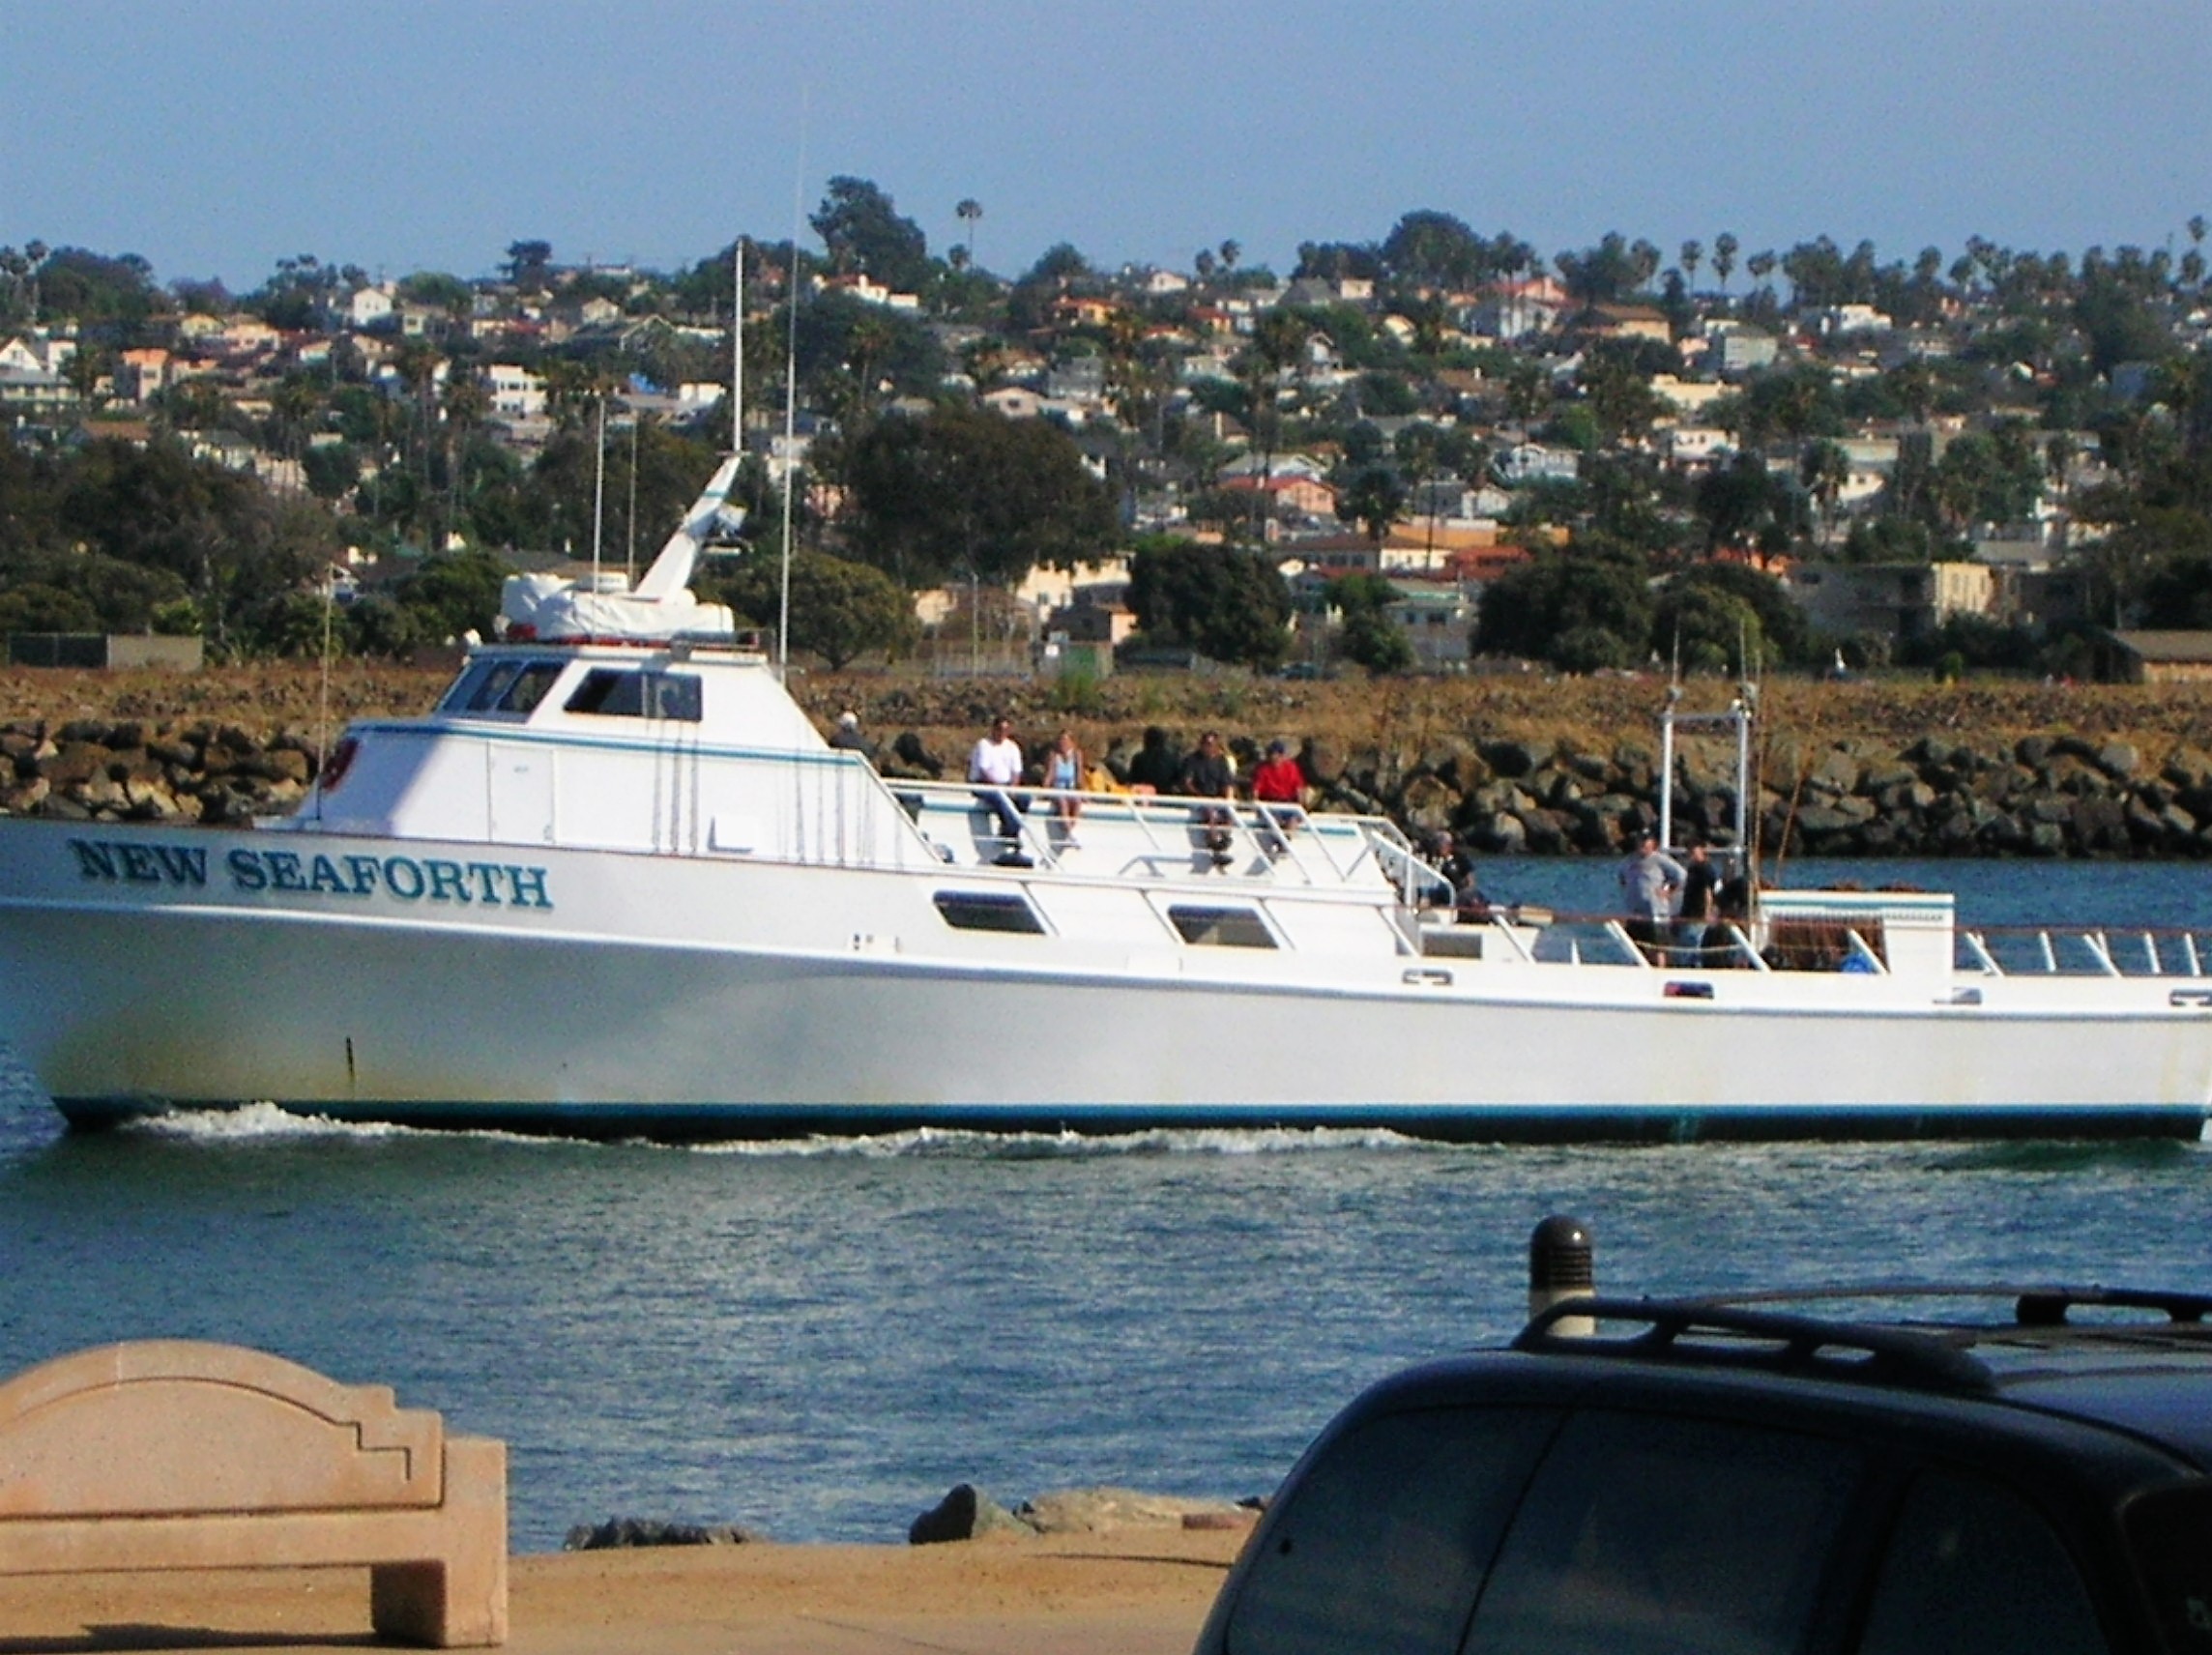 New Seaforth fishing vessel